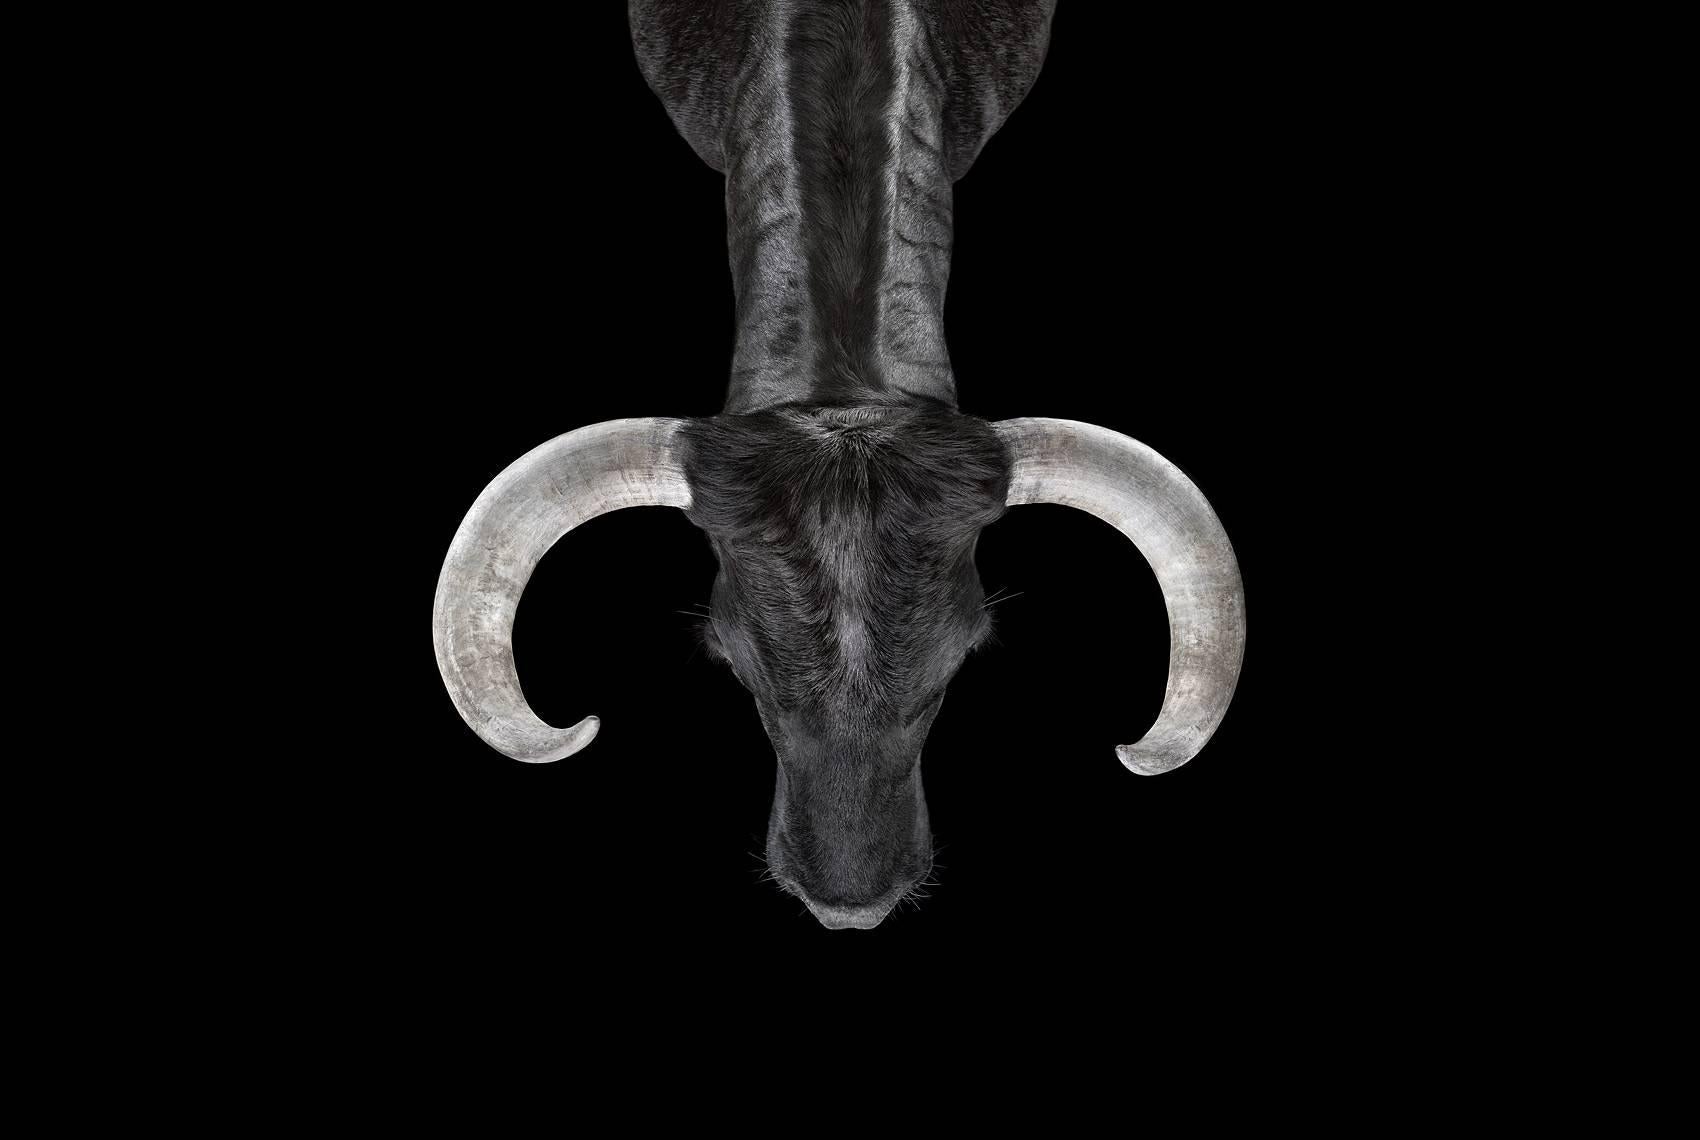 Bull #2, Los Angeles, CA, 2011" ist eine limitierte Auflage eines Fotos des zeitgenössischen Künstlers Brad Wilson aus der Serie "Affinity", die Studioporträts von Wildtieren zeigt. 

Dieses Foto wird nur als ungerahmter Abzug verkauft. Es ist in 4